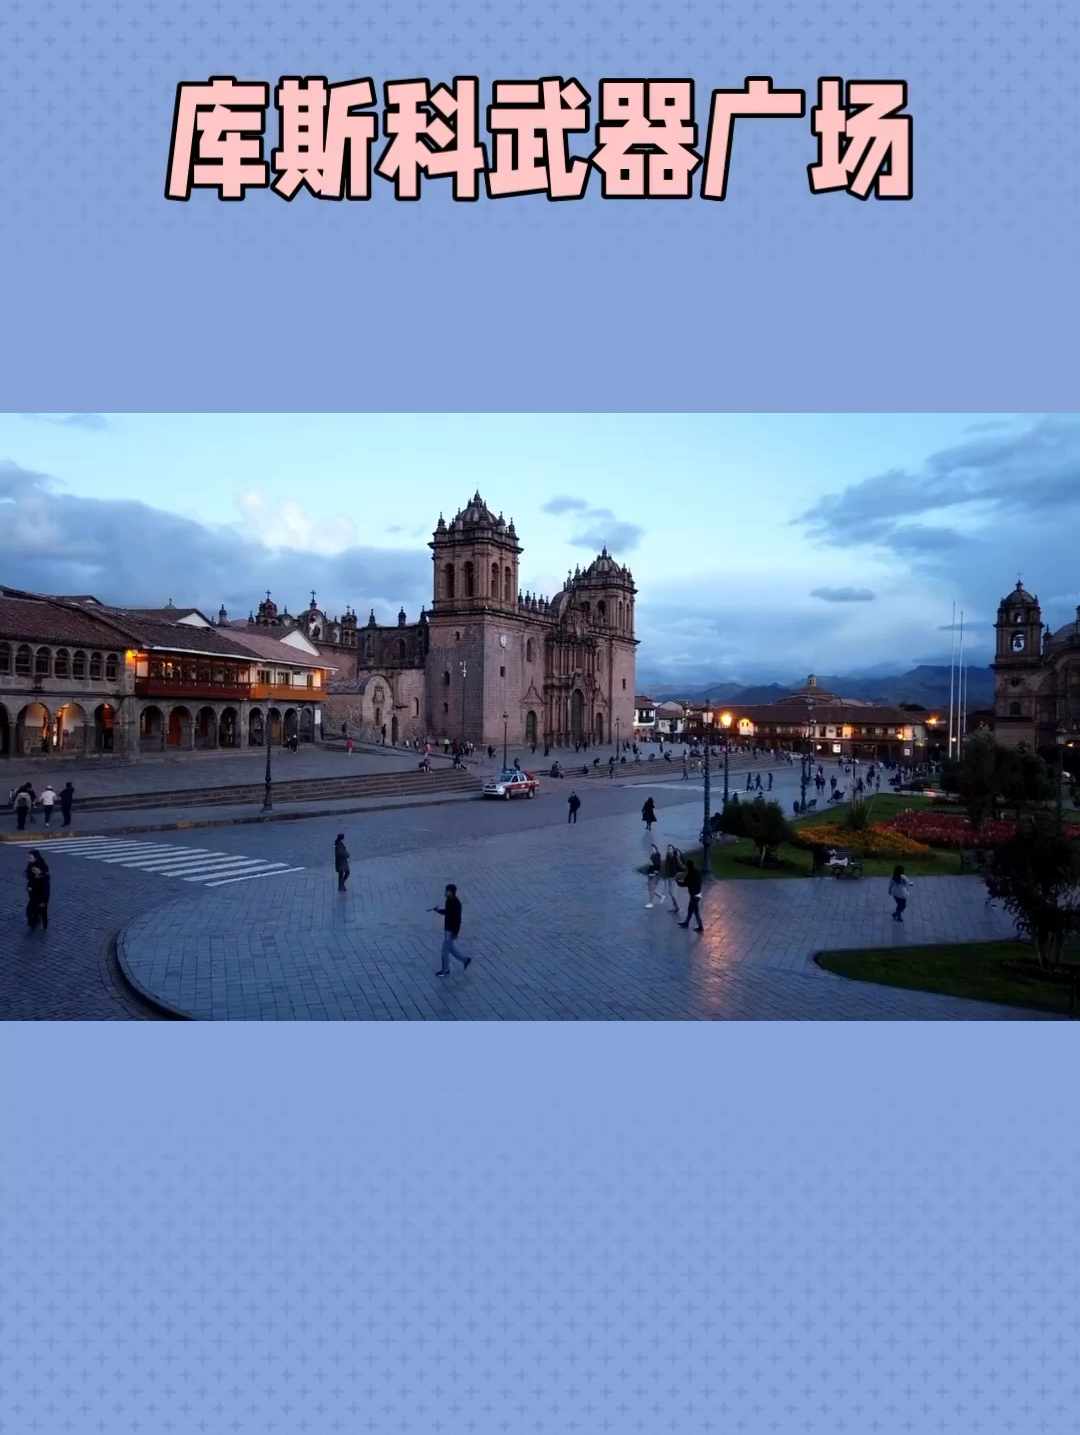 库斯科武器广场隶属秘鲁南部著名古城，古印加帝国首都